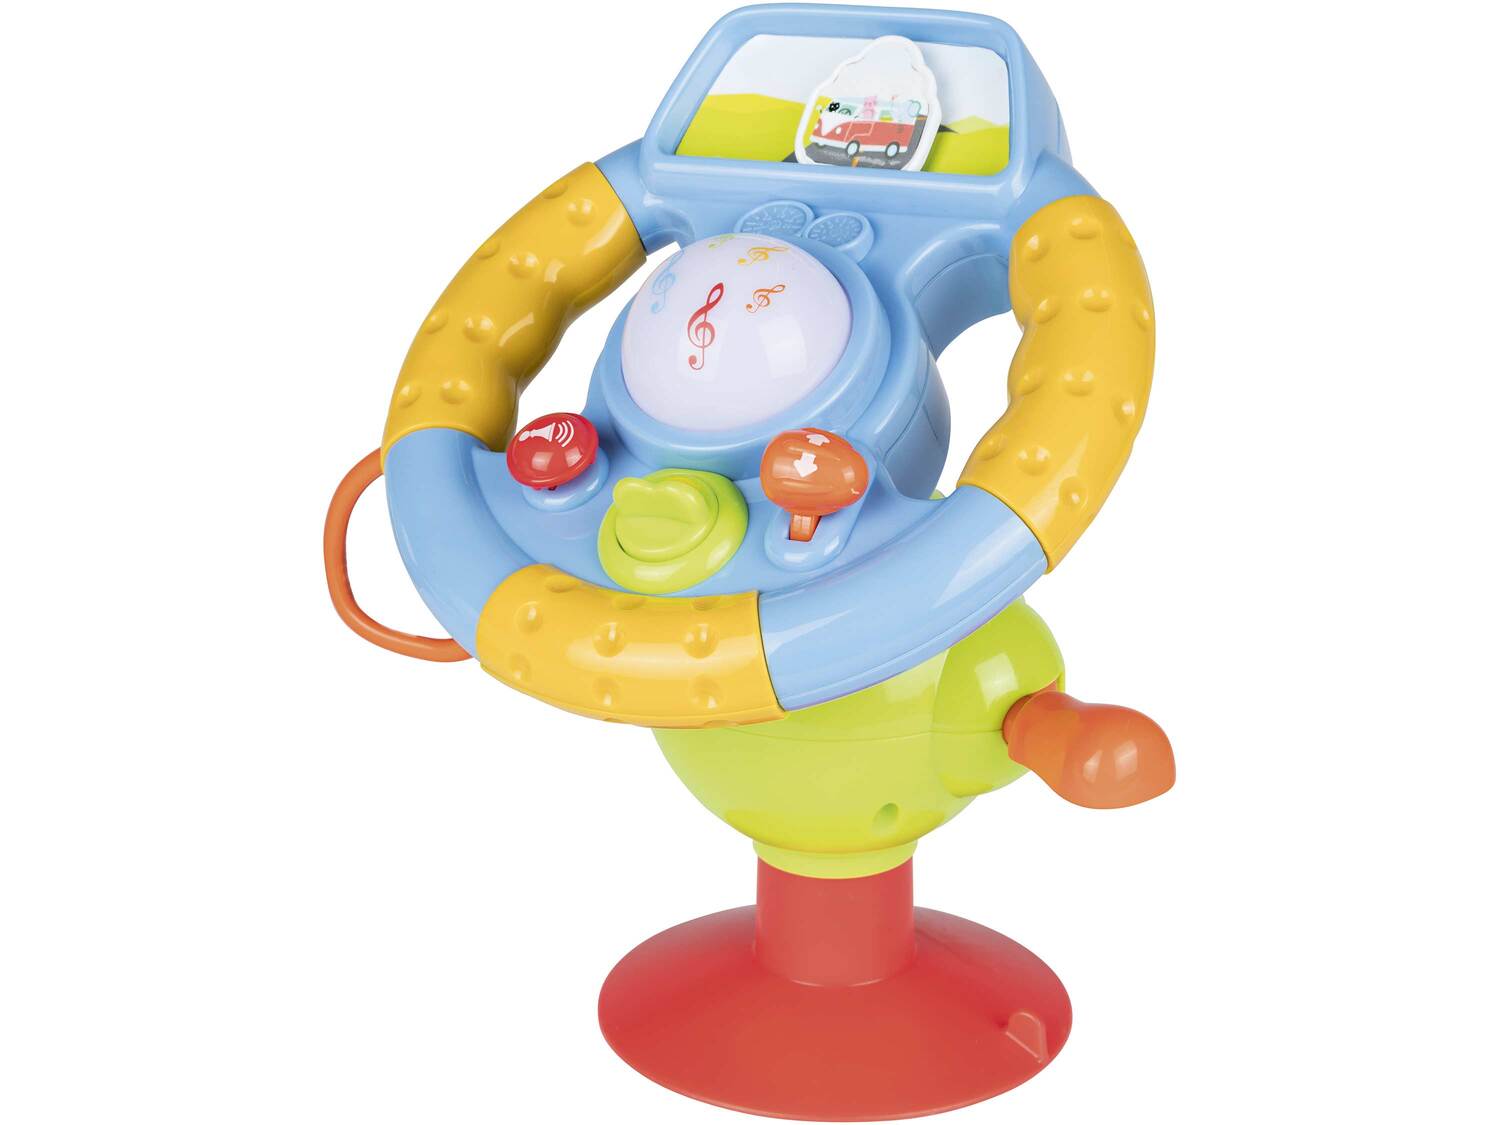 Zabawka edukacyjna Playtive Junior, cena 59,90 PLN 
- wspiera zdolności motoryczne ...